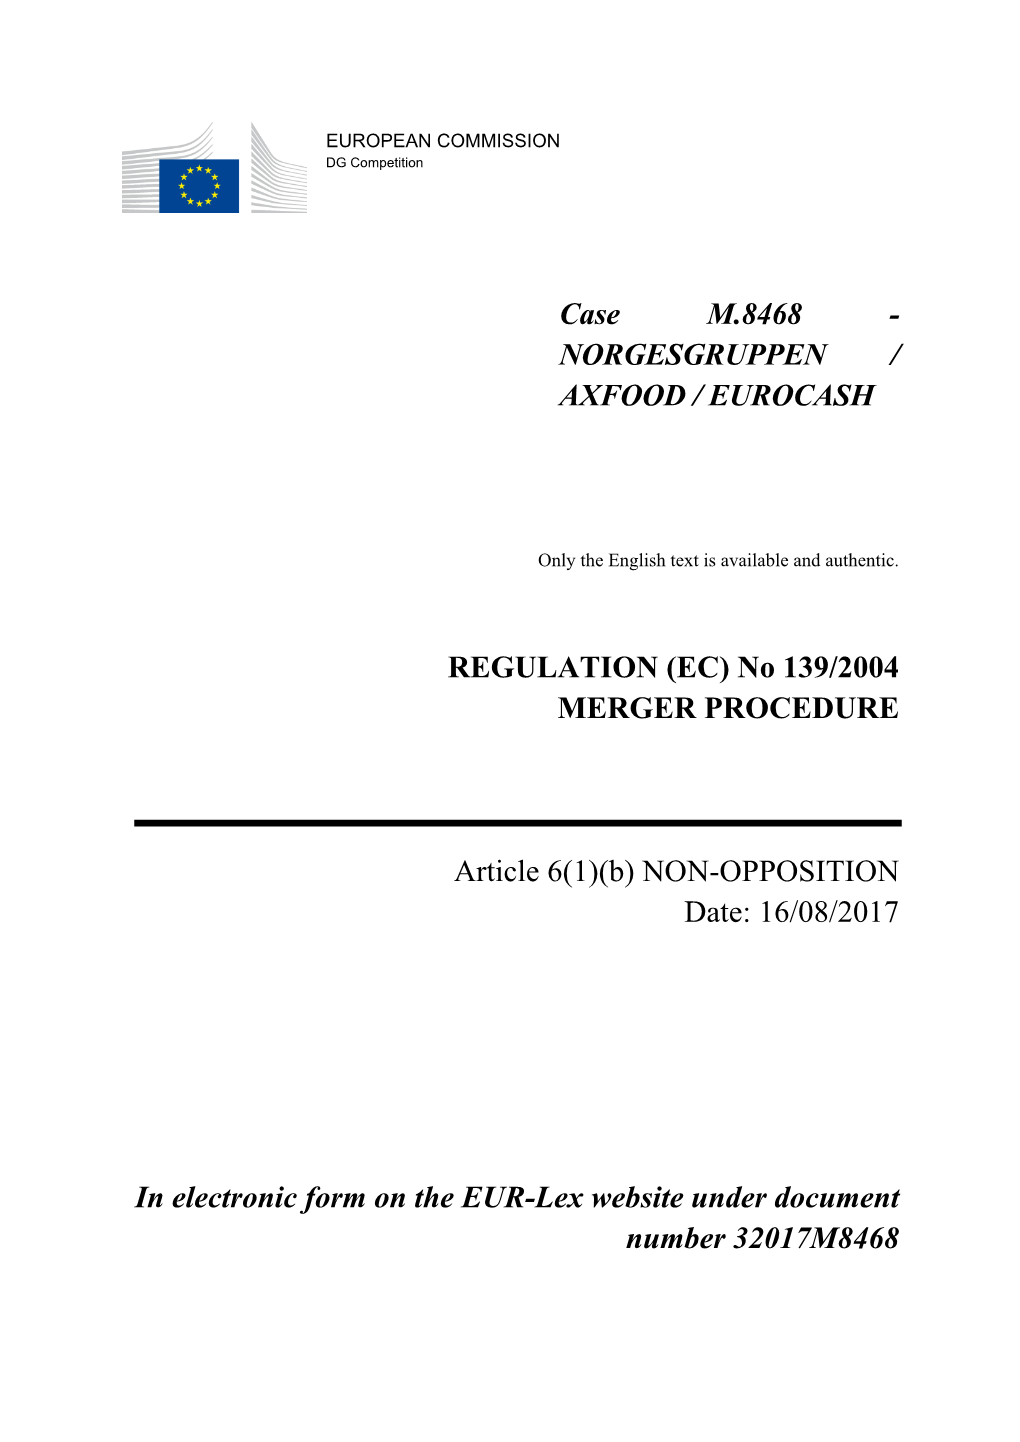 Case M.8468 - NORGESGRUPPEN / AXFOOD / EUROCASH